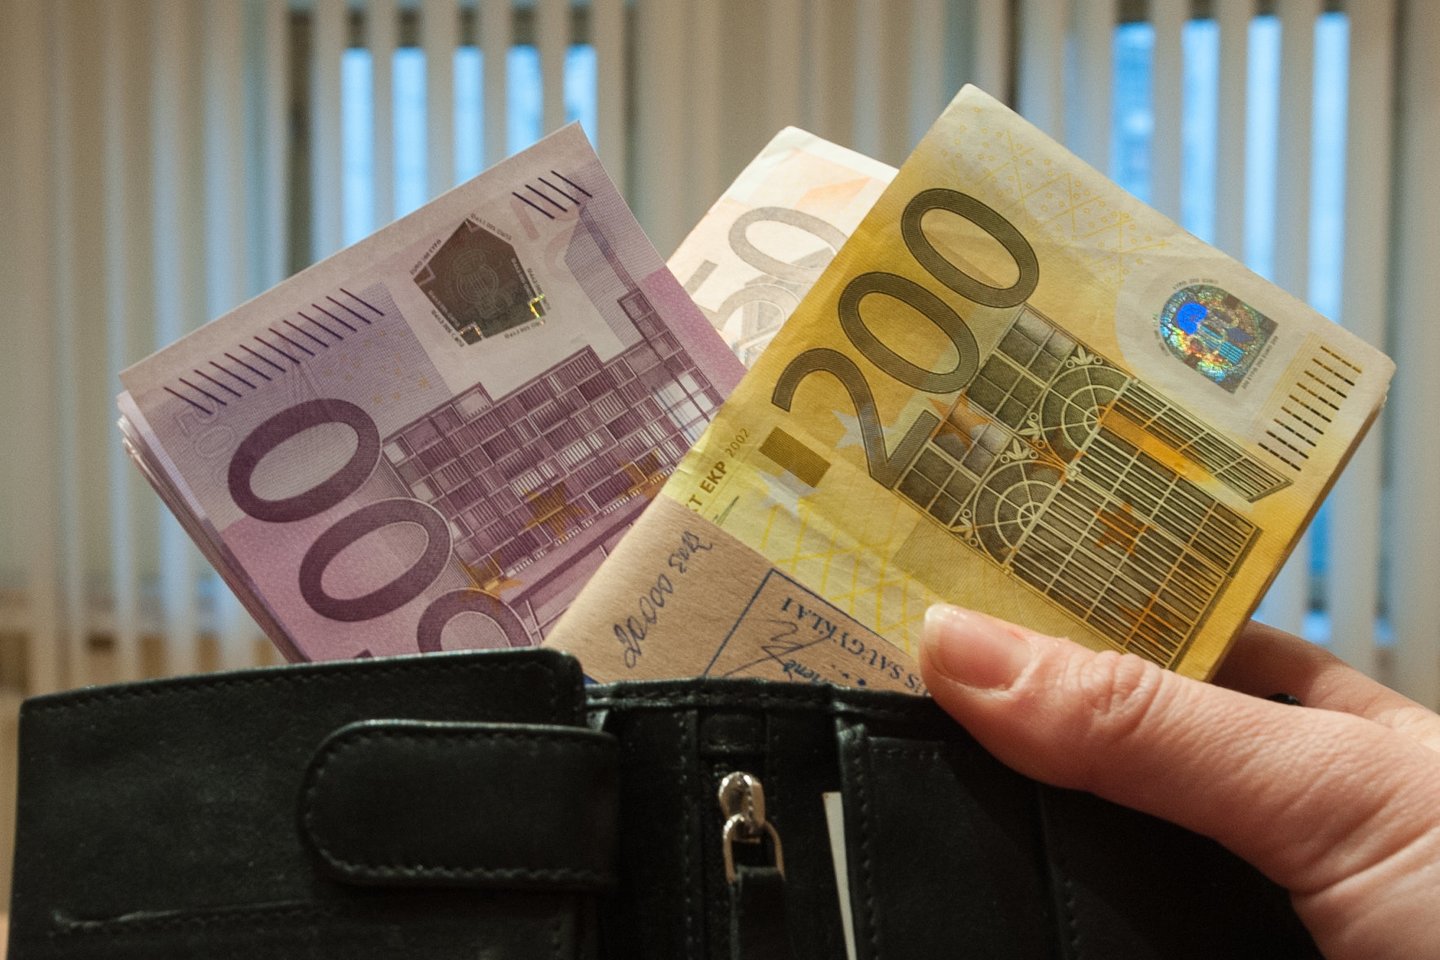  Žmonėms nurašyta delspinigių suma siekia per 7 mln. eurų, bet mokesčių jau laukiama. <br> V.Ščiavinsko nuotr. 